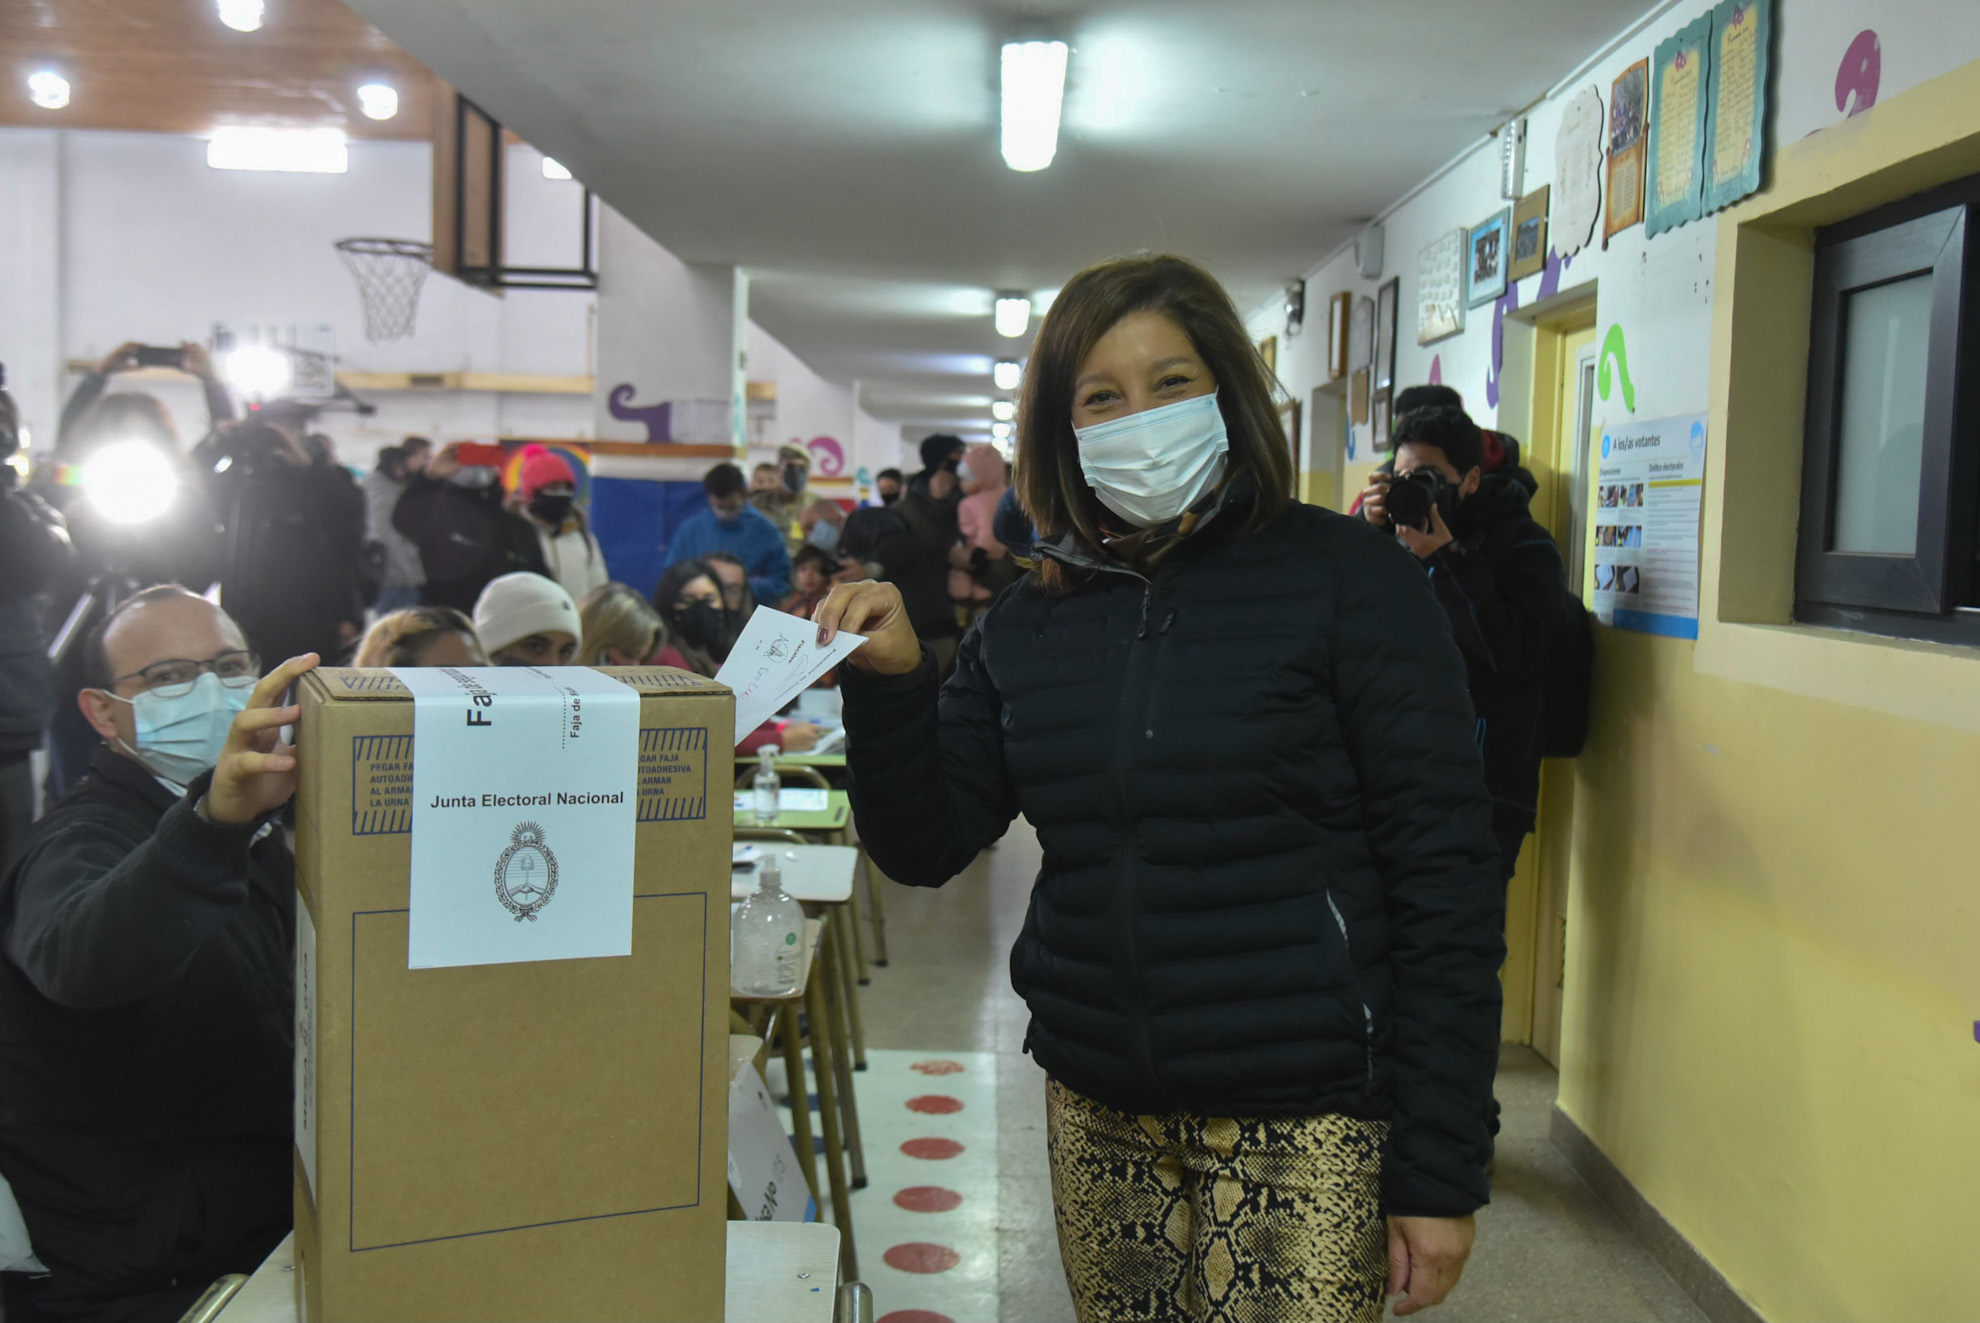 La gobernadora Arabela Carreras votó en la Escuela 321 de la zona oeste de Bariloche y anunció que viaja a la capital provincial a esperar los resultados. Foto: Chino Leiva